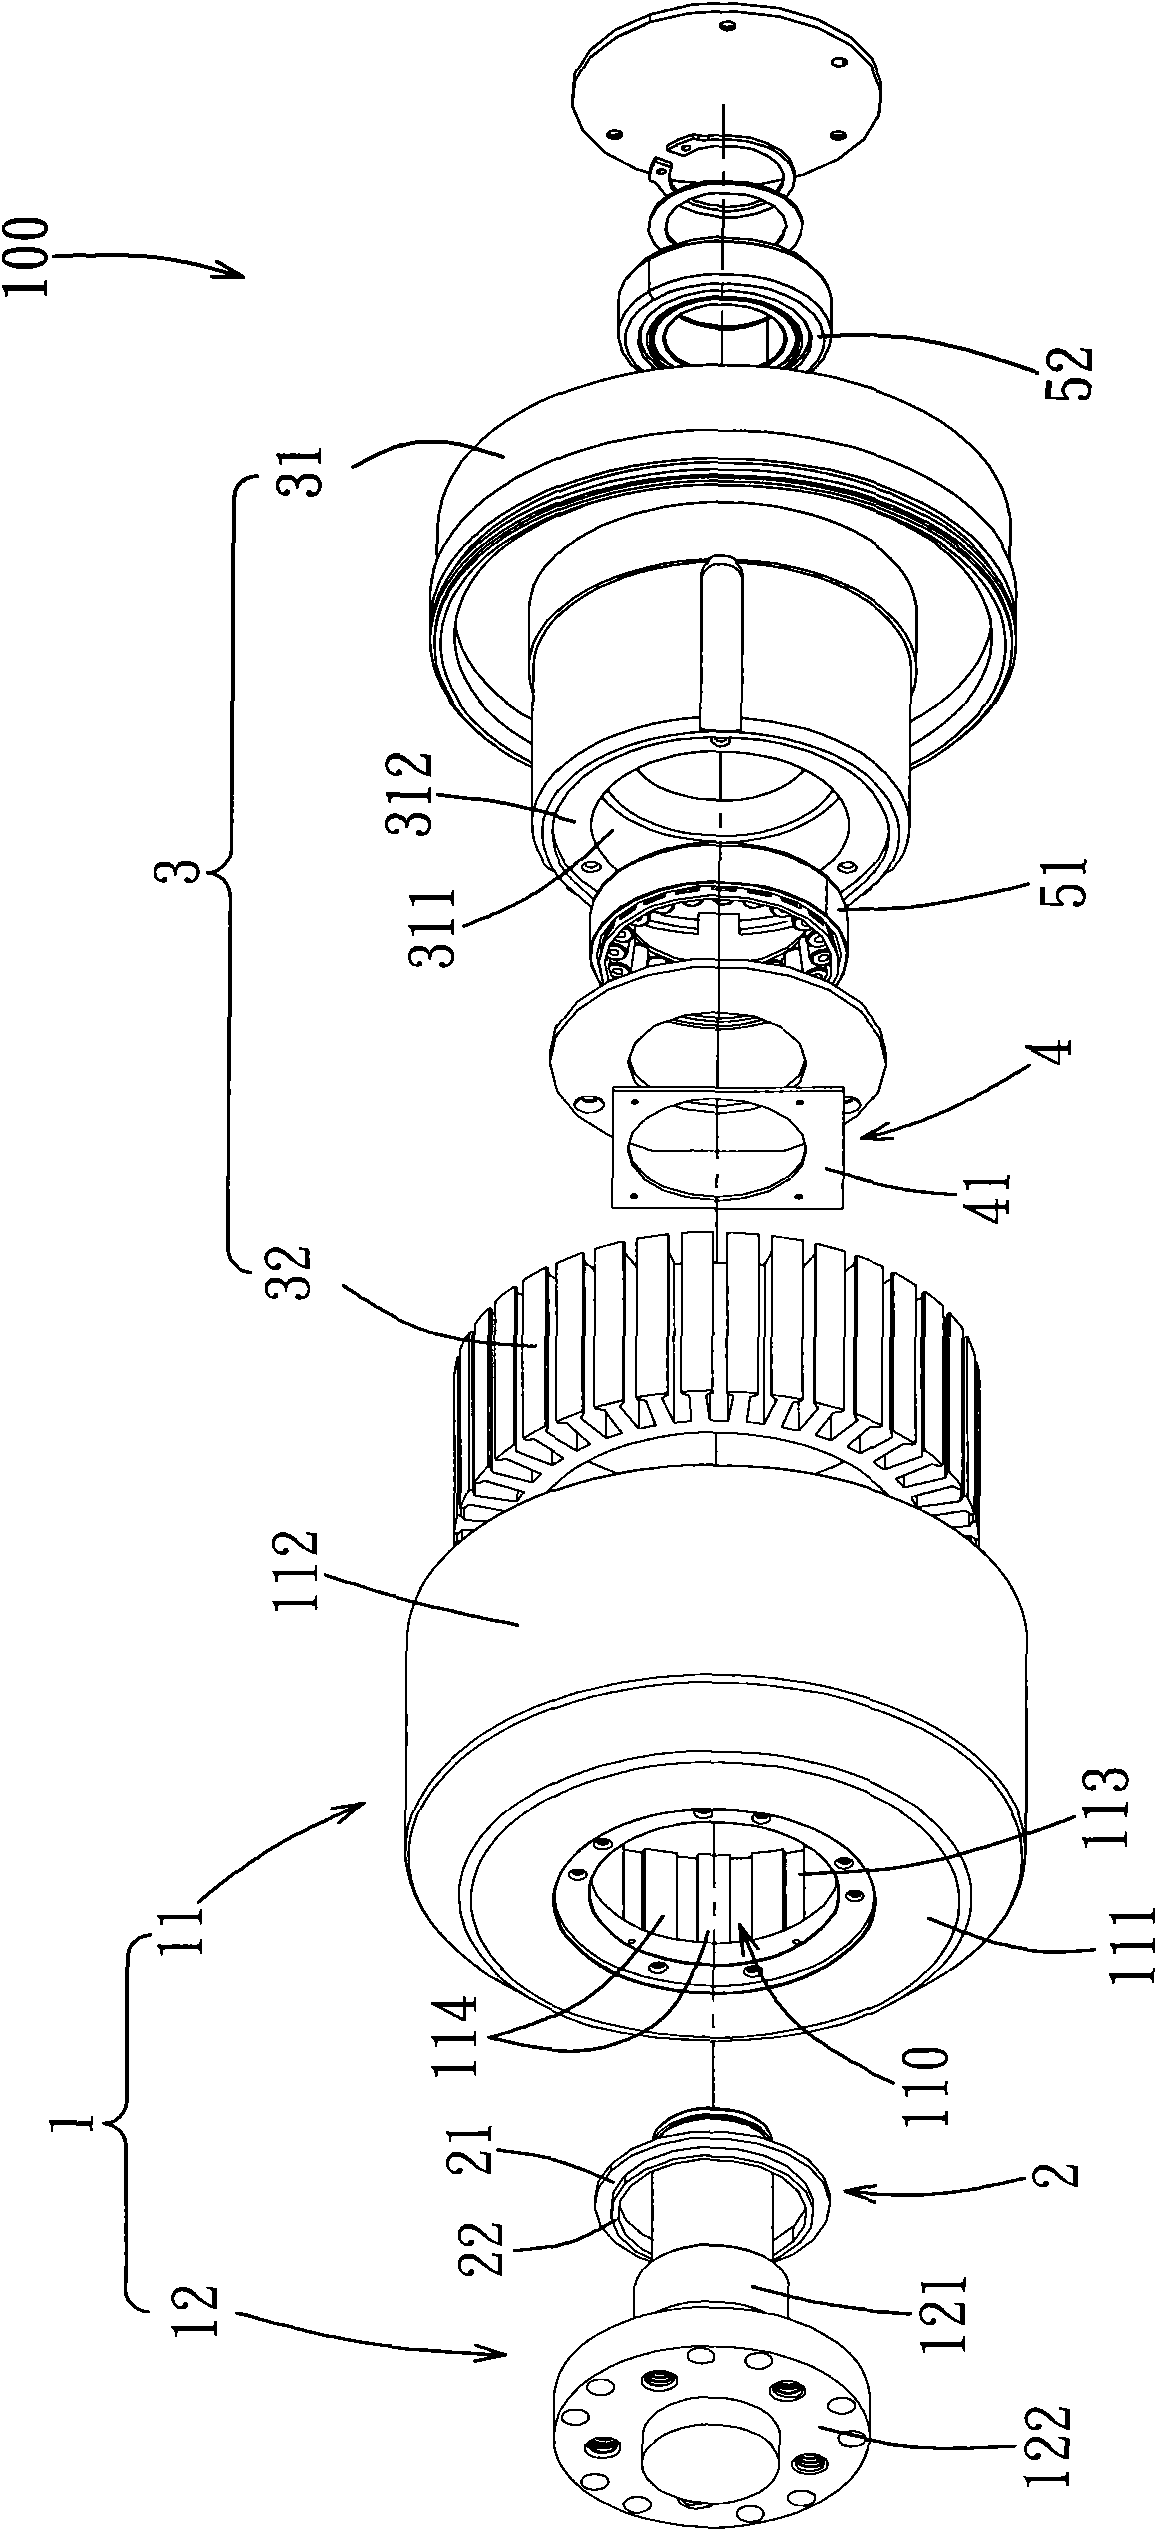 Hub motor